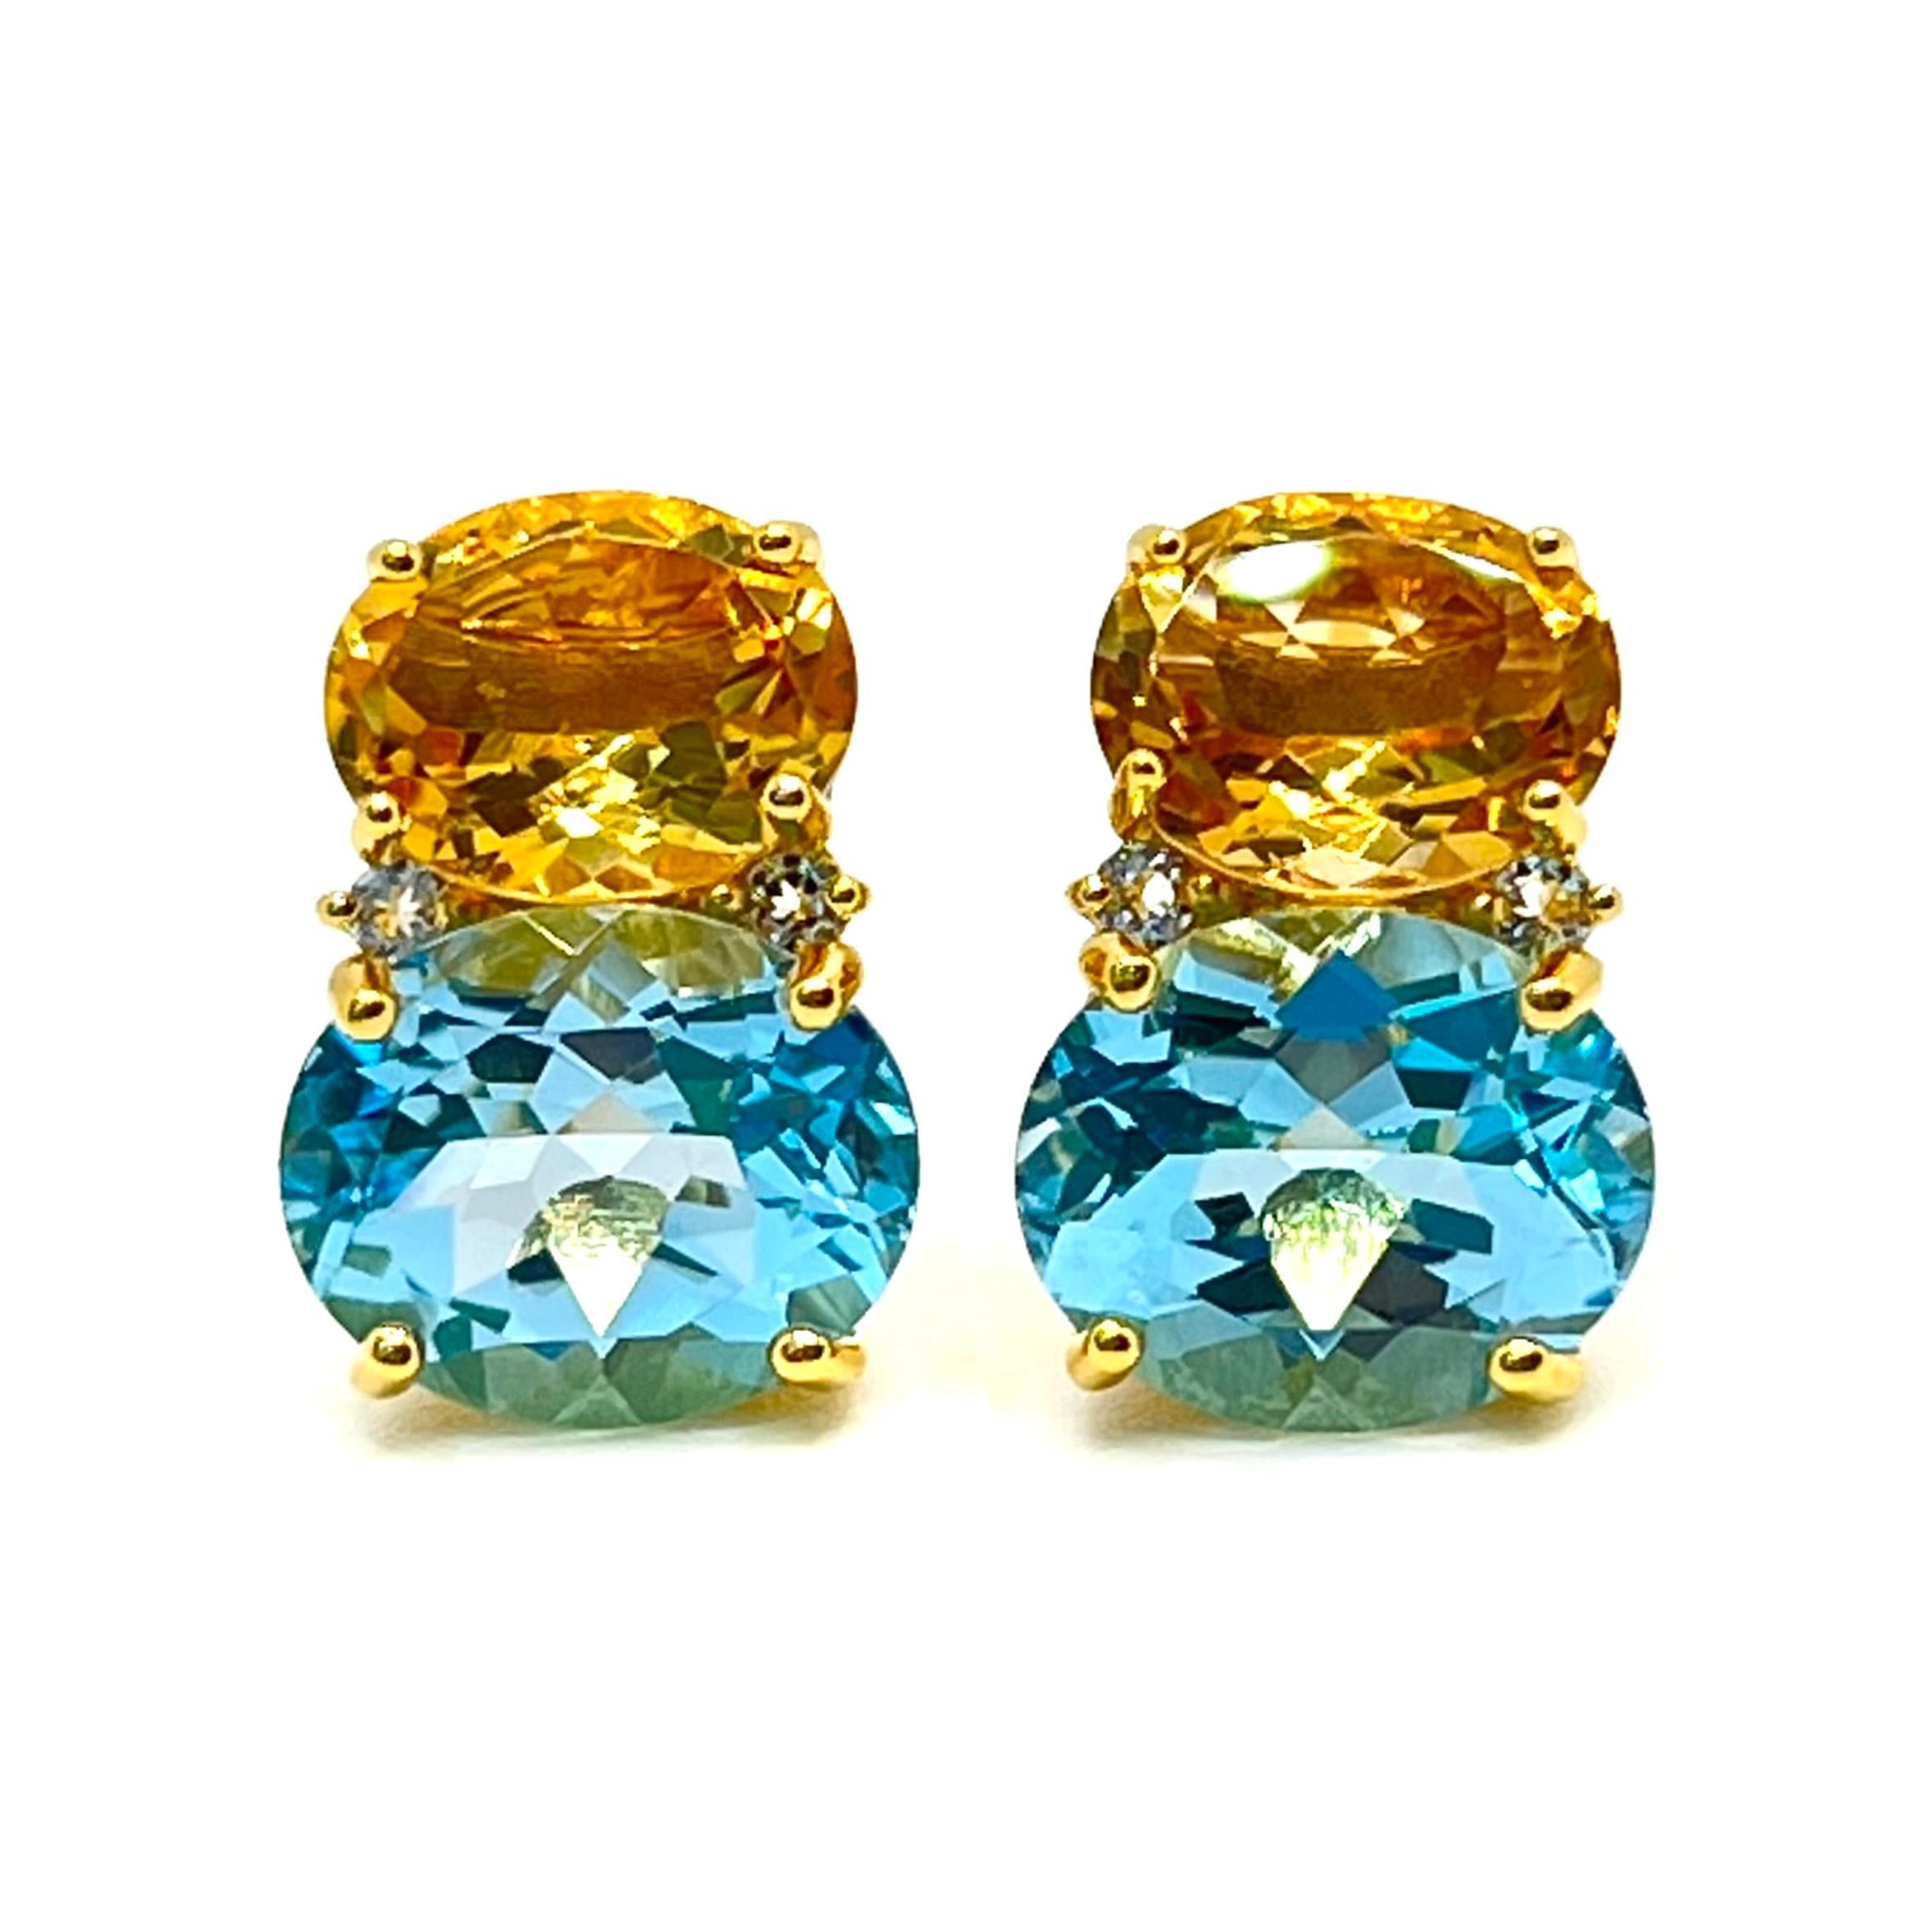 Cette magnifique paire de boucles d'oreilles présente une paire de citrines ovales authentiques, de topazes bleues, ornées de topazes blanches rondes sur le côté, serties dans de l'or jaune 18k vermeil sur de l'argent sterling. La belle combinaison